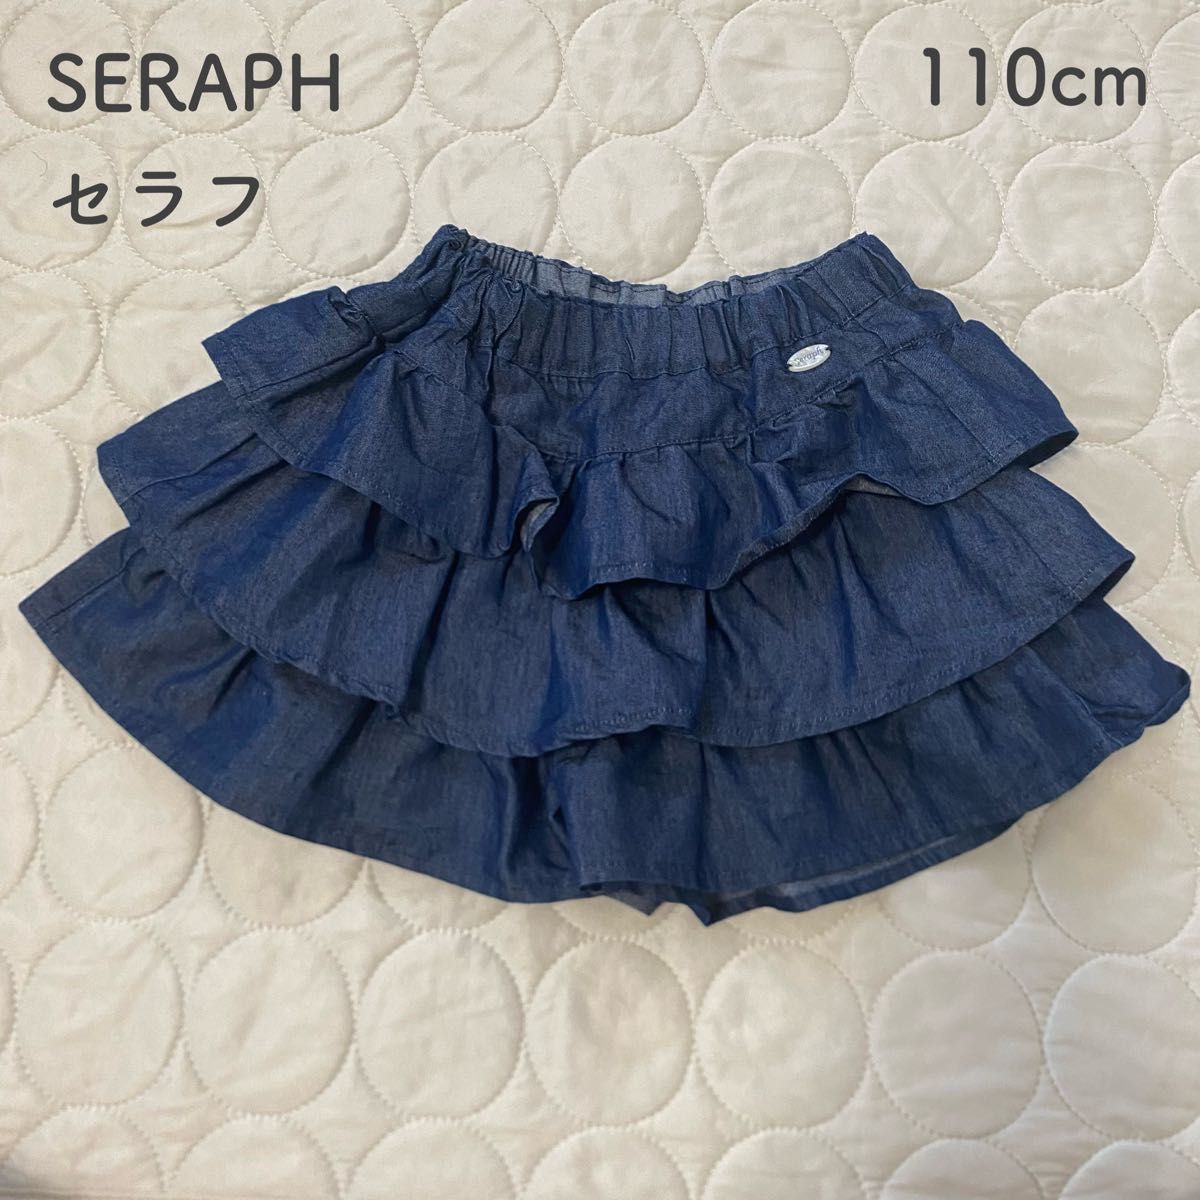 Seraph(セラフ) /110cm